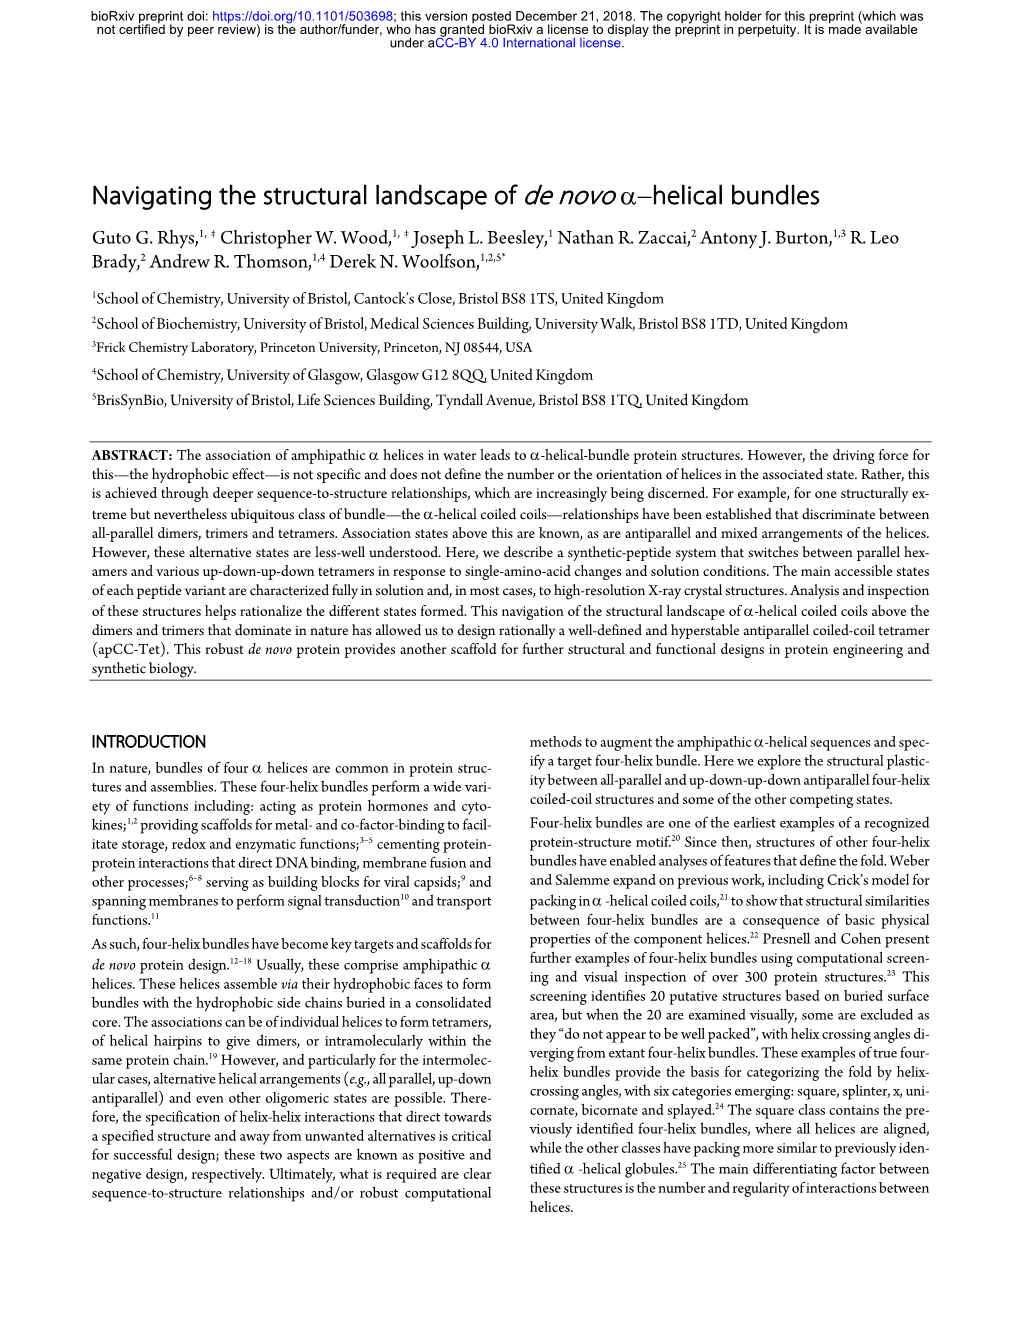 Navigating the Structural Landscape of De Novo Α–Helical Bundles